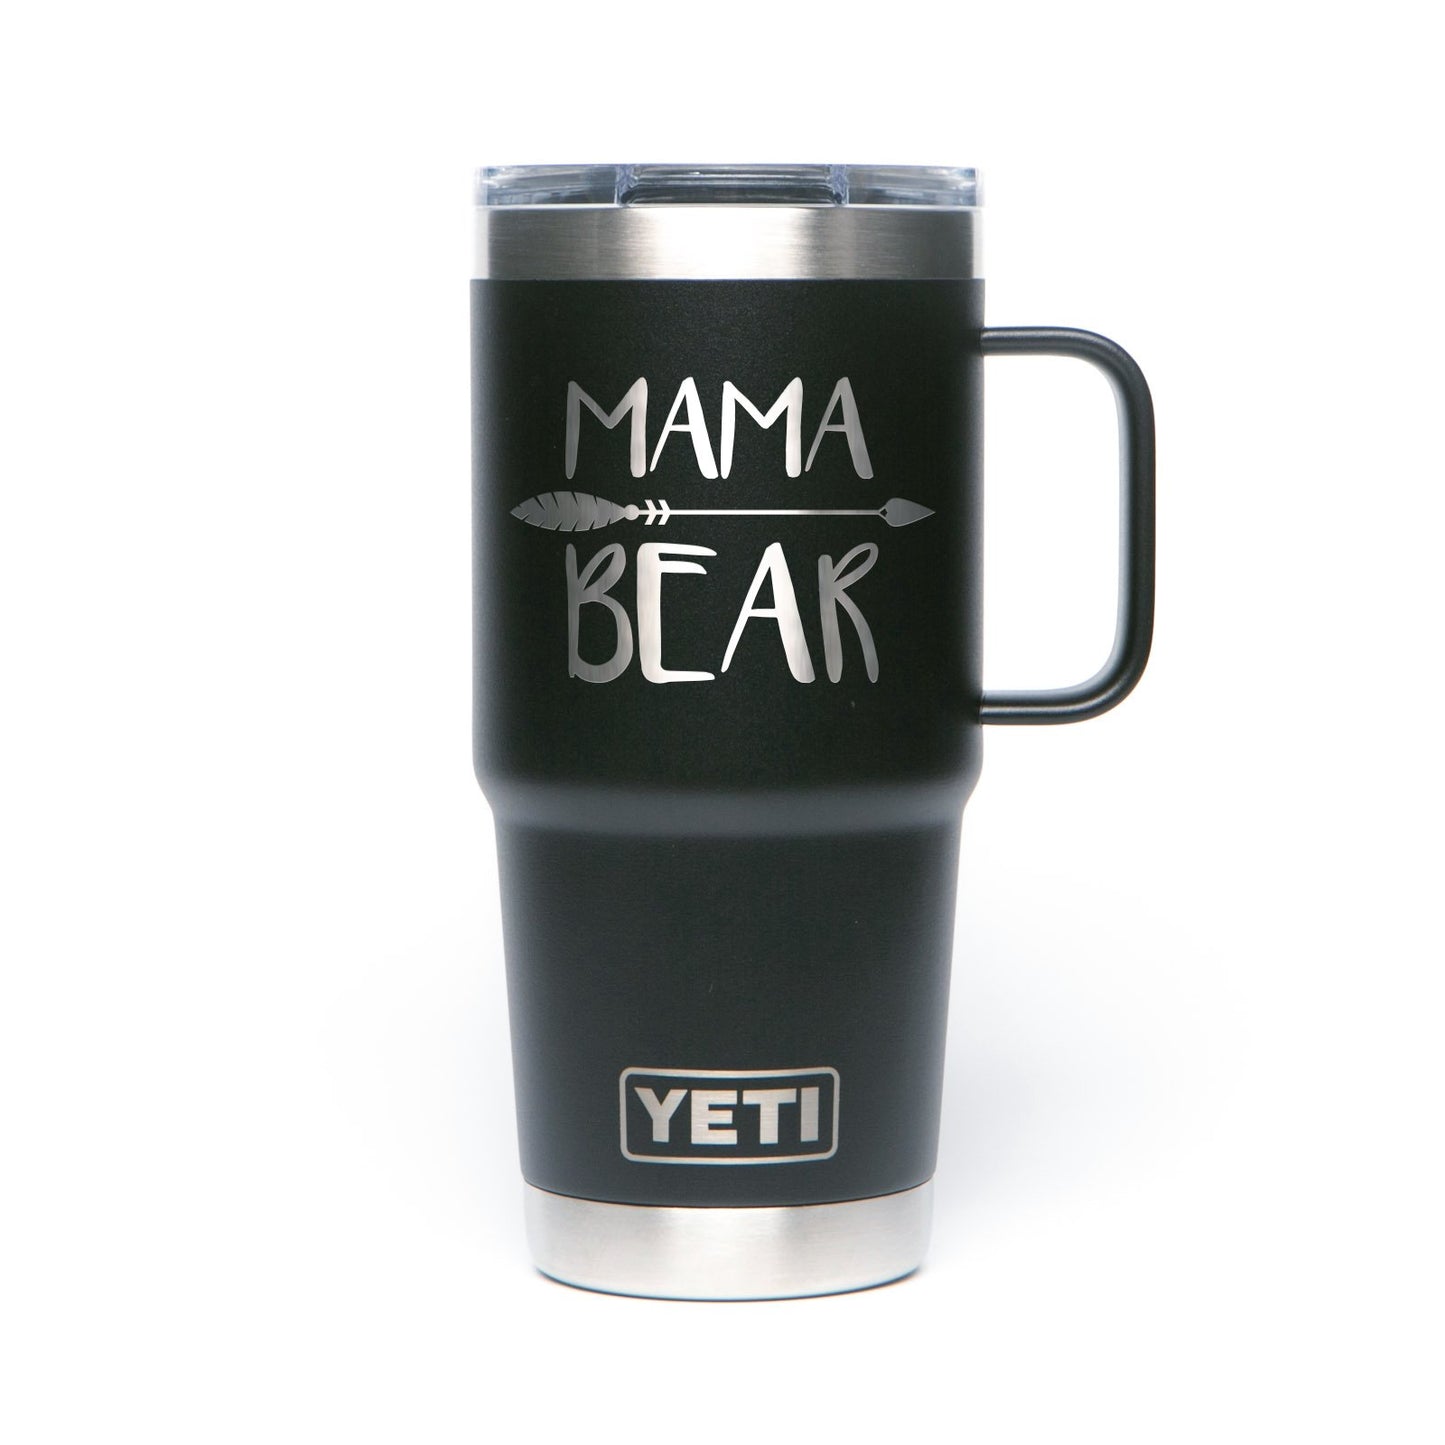 Yeti Rambler 20 oz. Travel Mug with Stronghold Lid